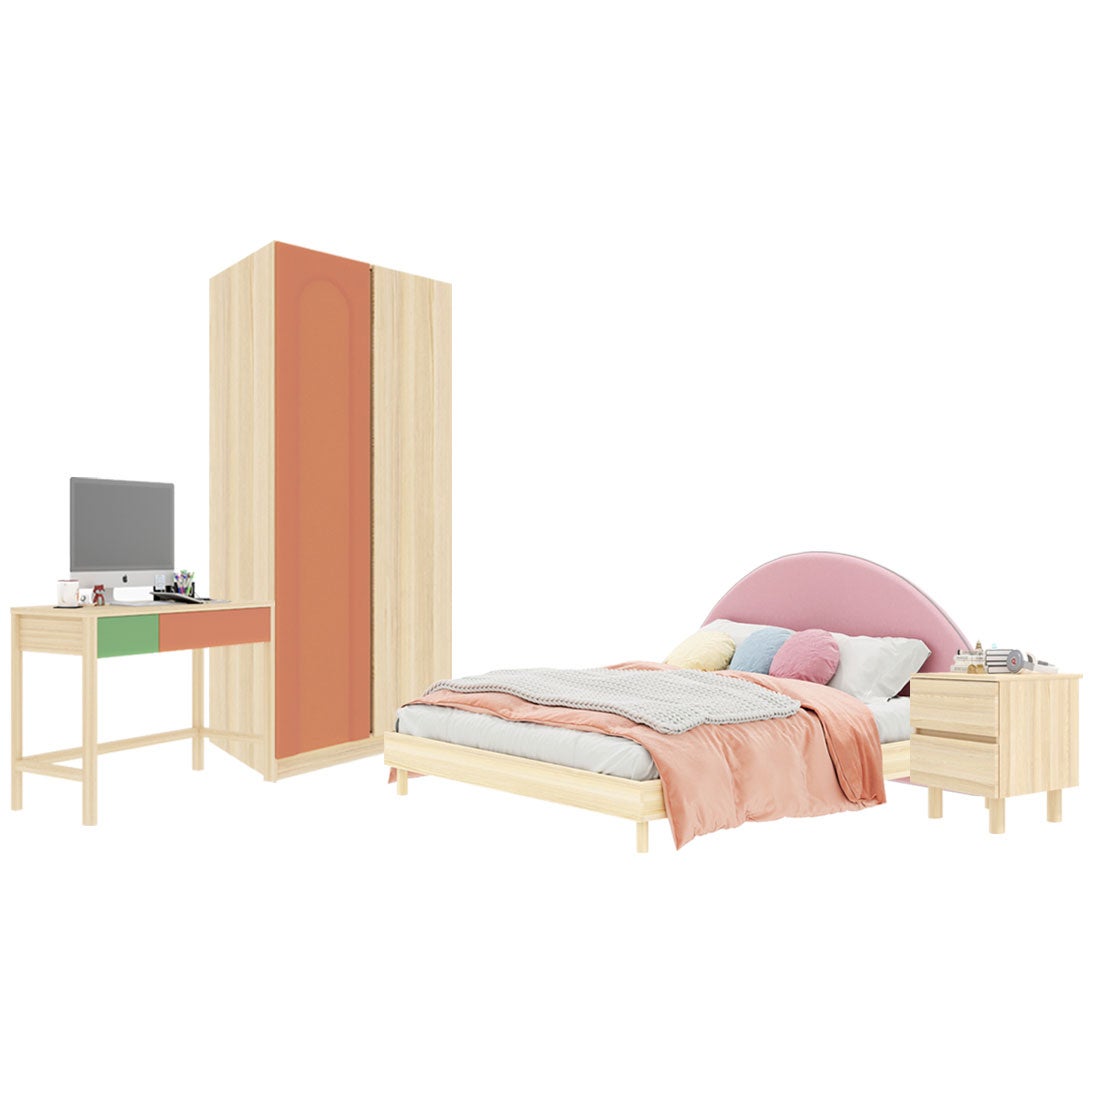 ชุดห้องนอน ขนาด 5 ฟุต-เบาะชมพู รุ่น Bingsoo & ตู้เสื้อผ้า 90 ซม. พร้อมตู้ข้างเตียง สีพีช01